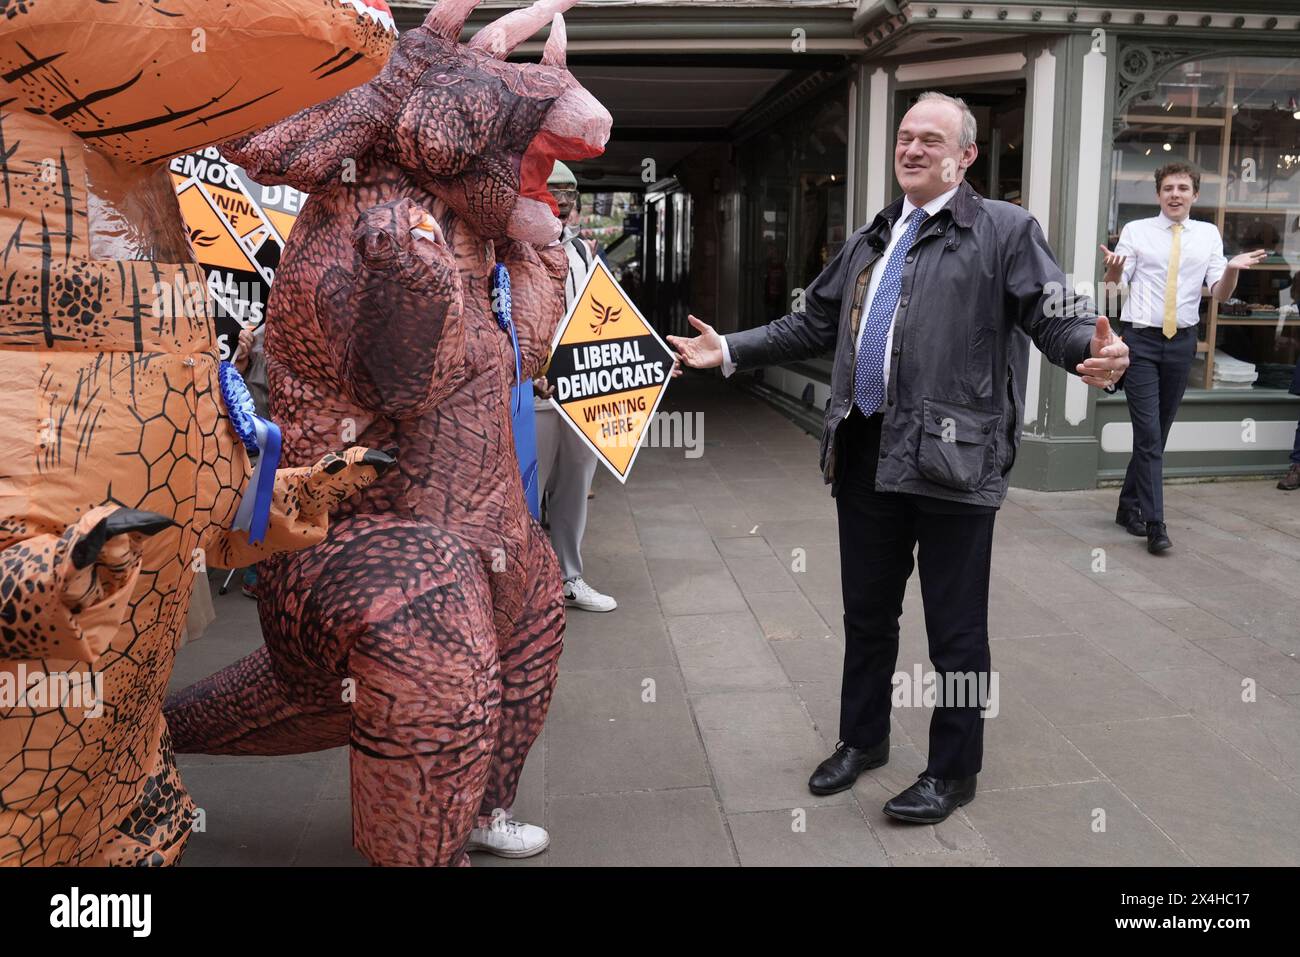 Der Führer der Liberaldemokraten Sir Ed Davey wird von Tory „Dinosauriern“ begrüßt, als er nach den Wahlen in der Kommunalregierung bei einer feierlichen Kundgebung in Winchester ankommt, um sich den lokalen Lib dem-Aktivisten anzuschließen. Bilddatum: Freitag, 3. Mai 2024. Stockfoto